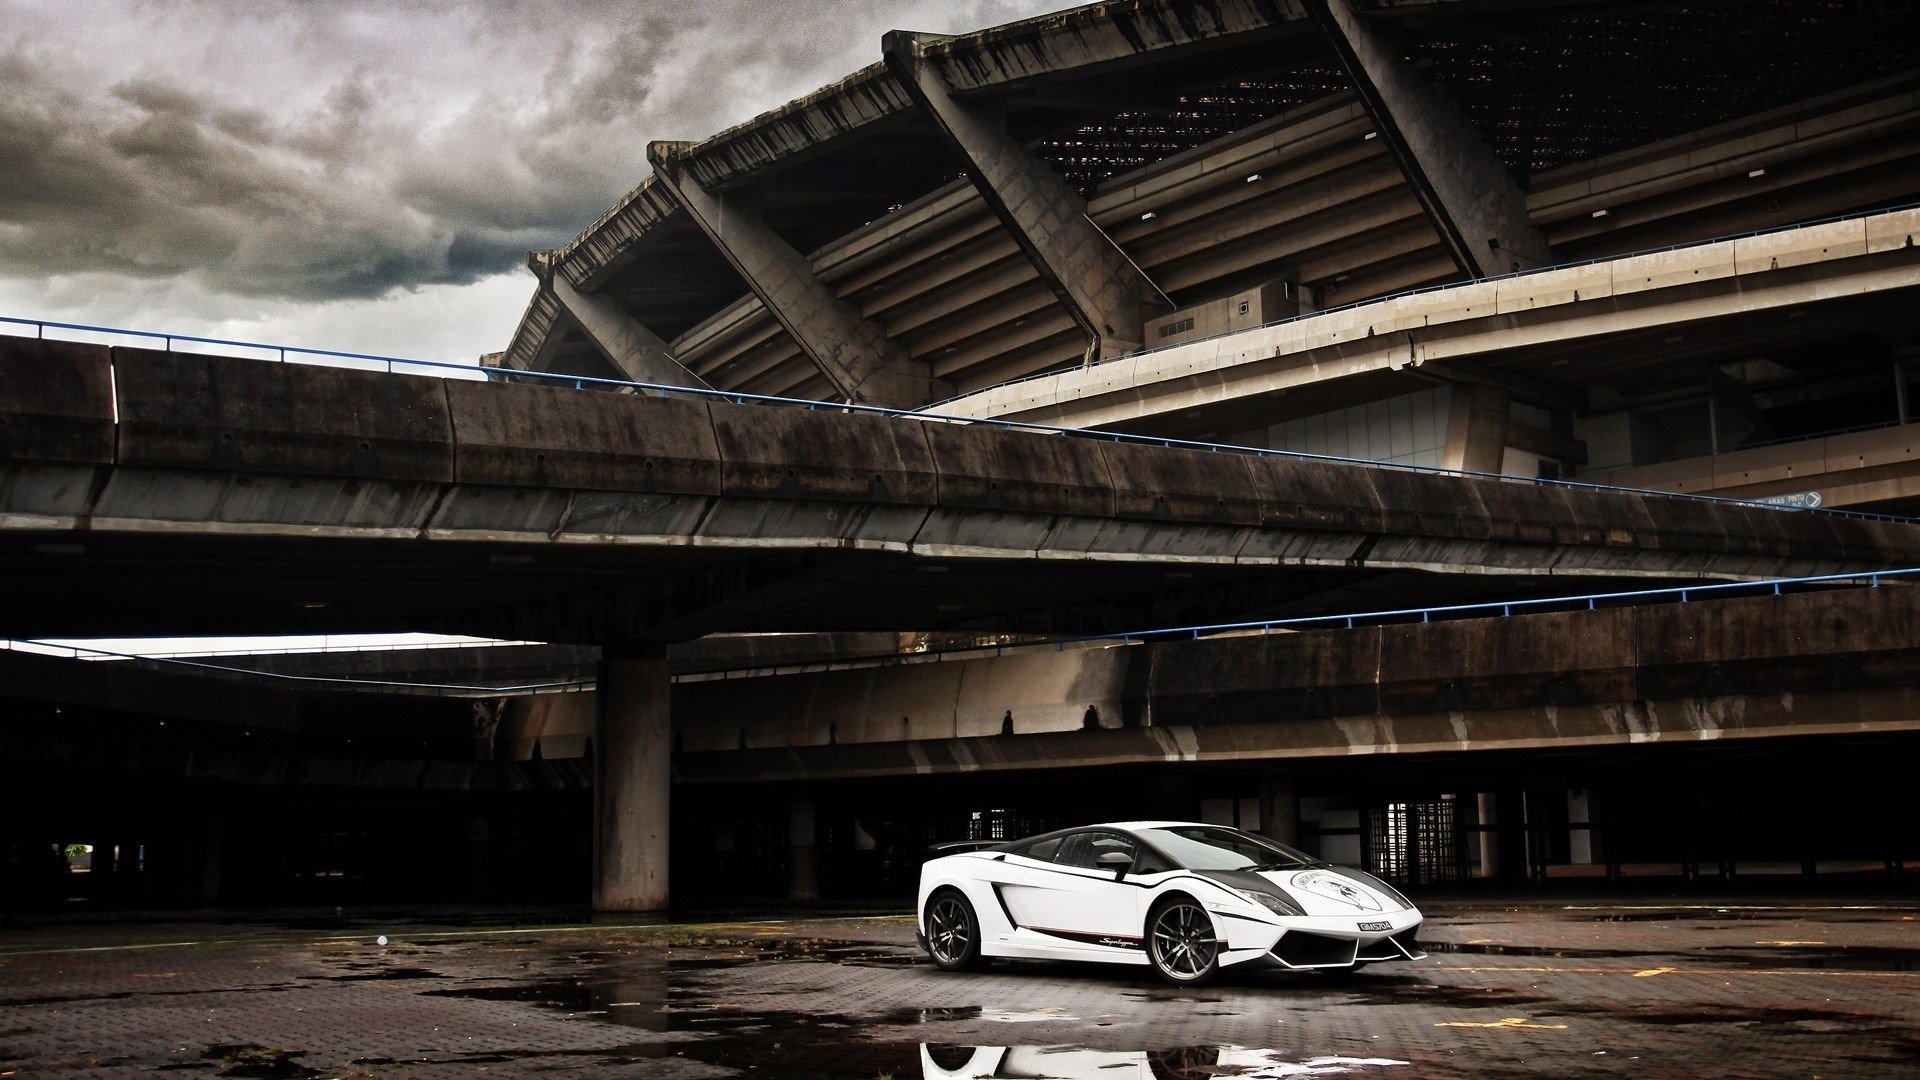 Free download Lamborghini Gallardo wallpaper ID:293117 hd 1080p for desktop